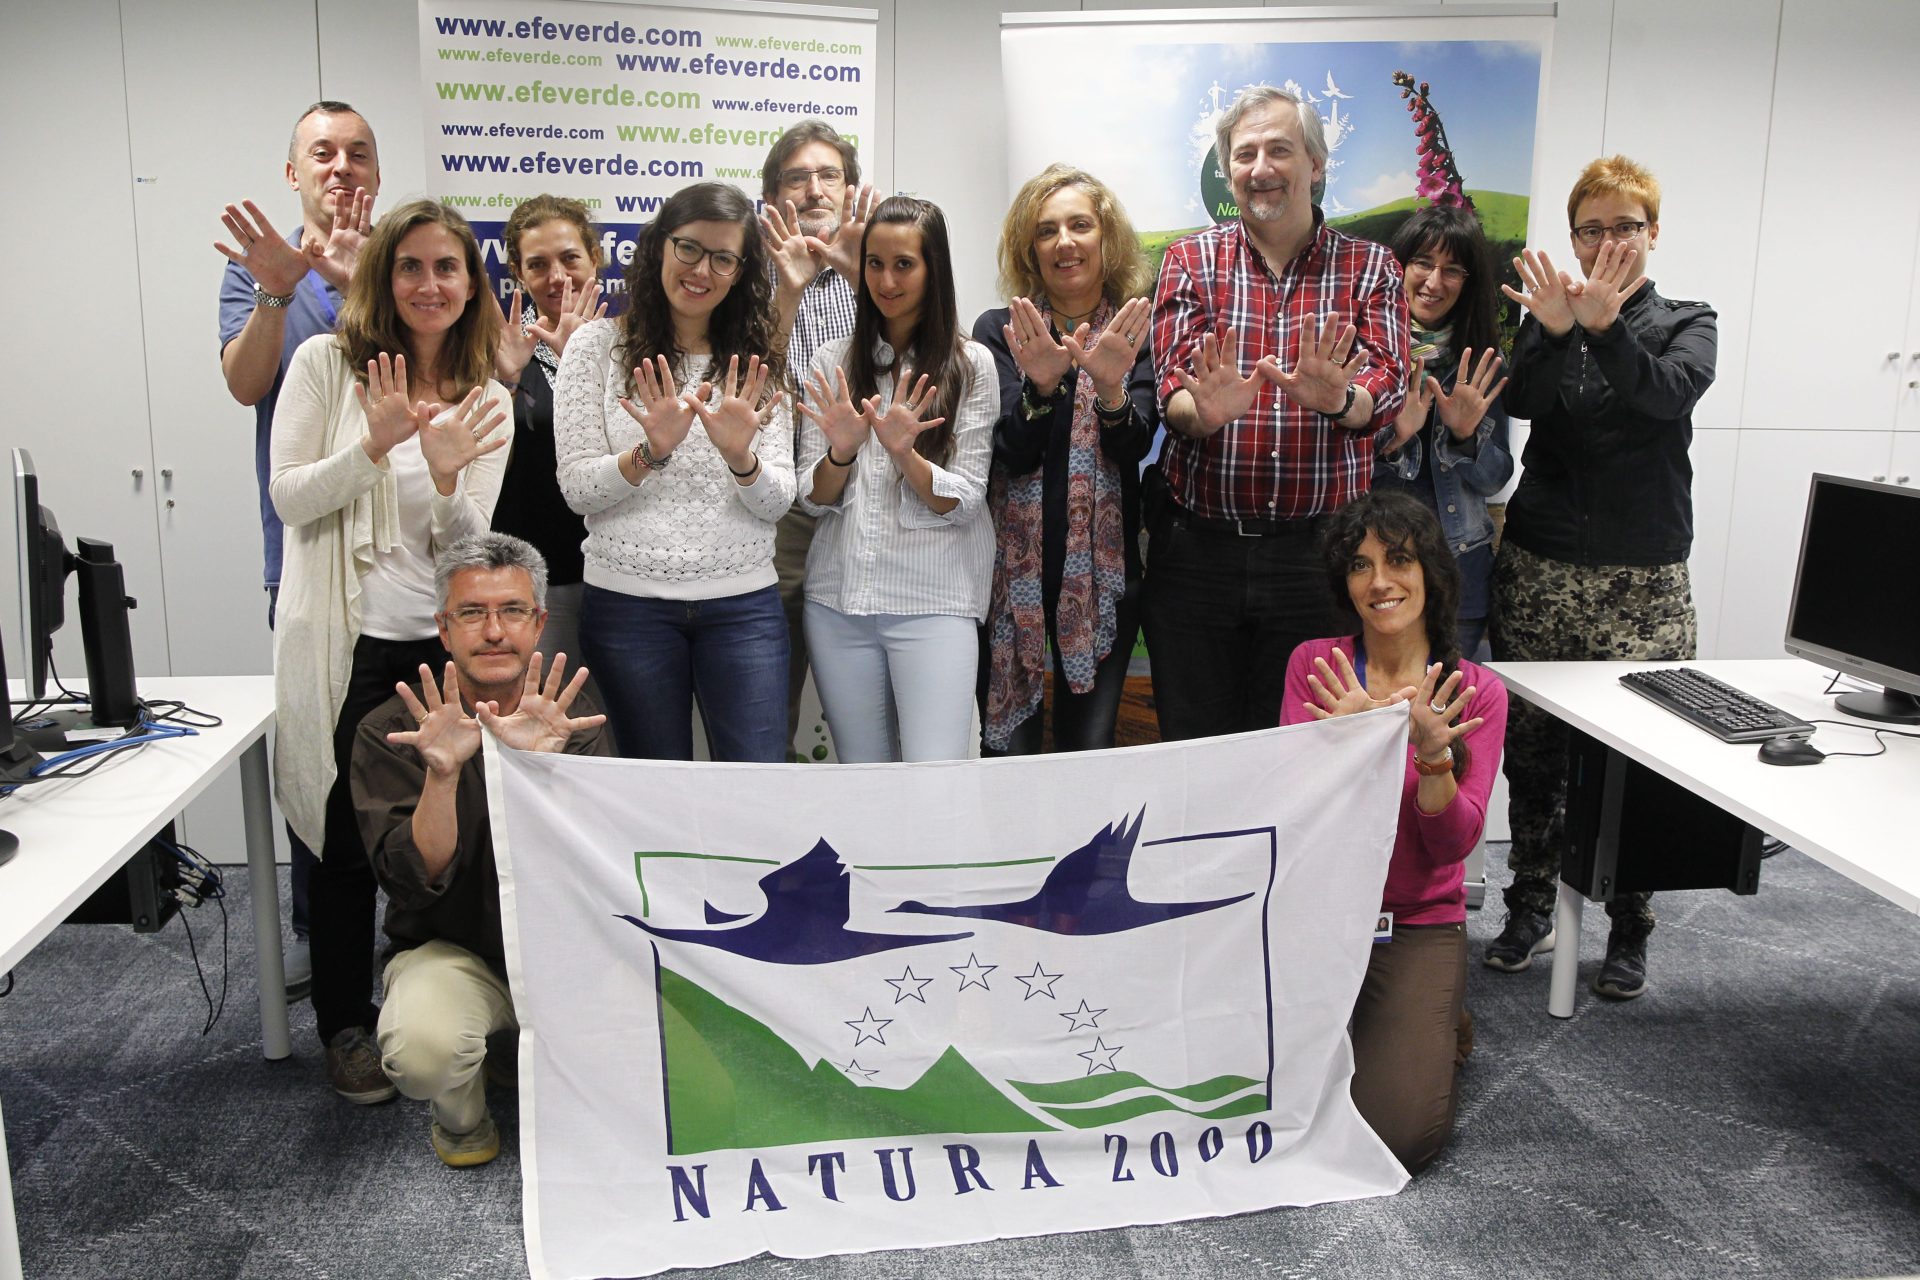 Redacción de EFEverde. Día europeo de la Red Natura 2000, una iniciativa de SEO/Birdlife y EFEverde de la Agencia EFE, que se celebra en 19 países Europeos. Activa Red Natura / Life Infonatur 2000